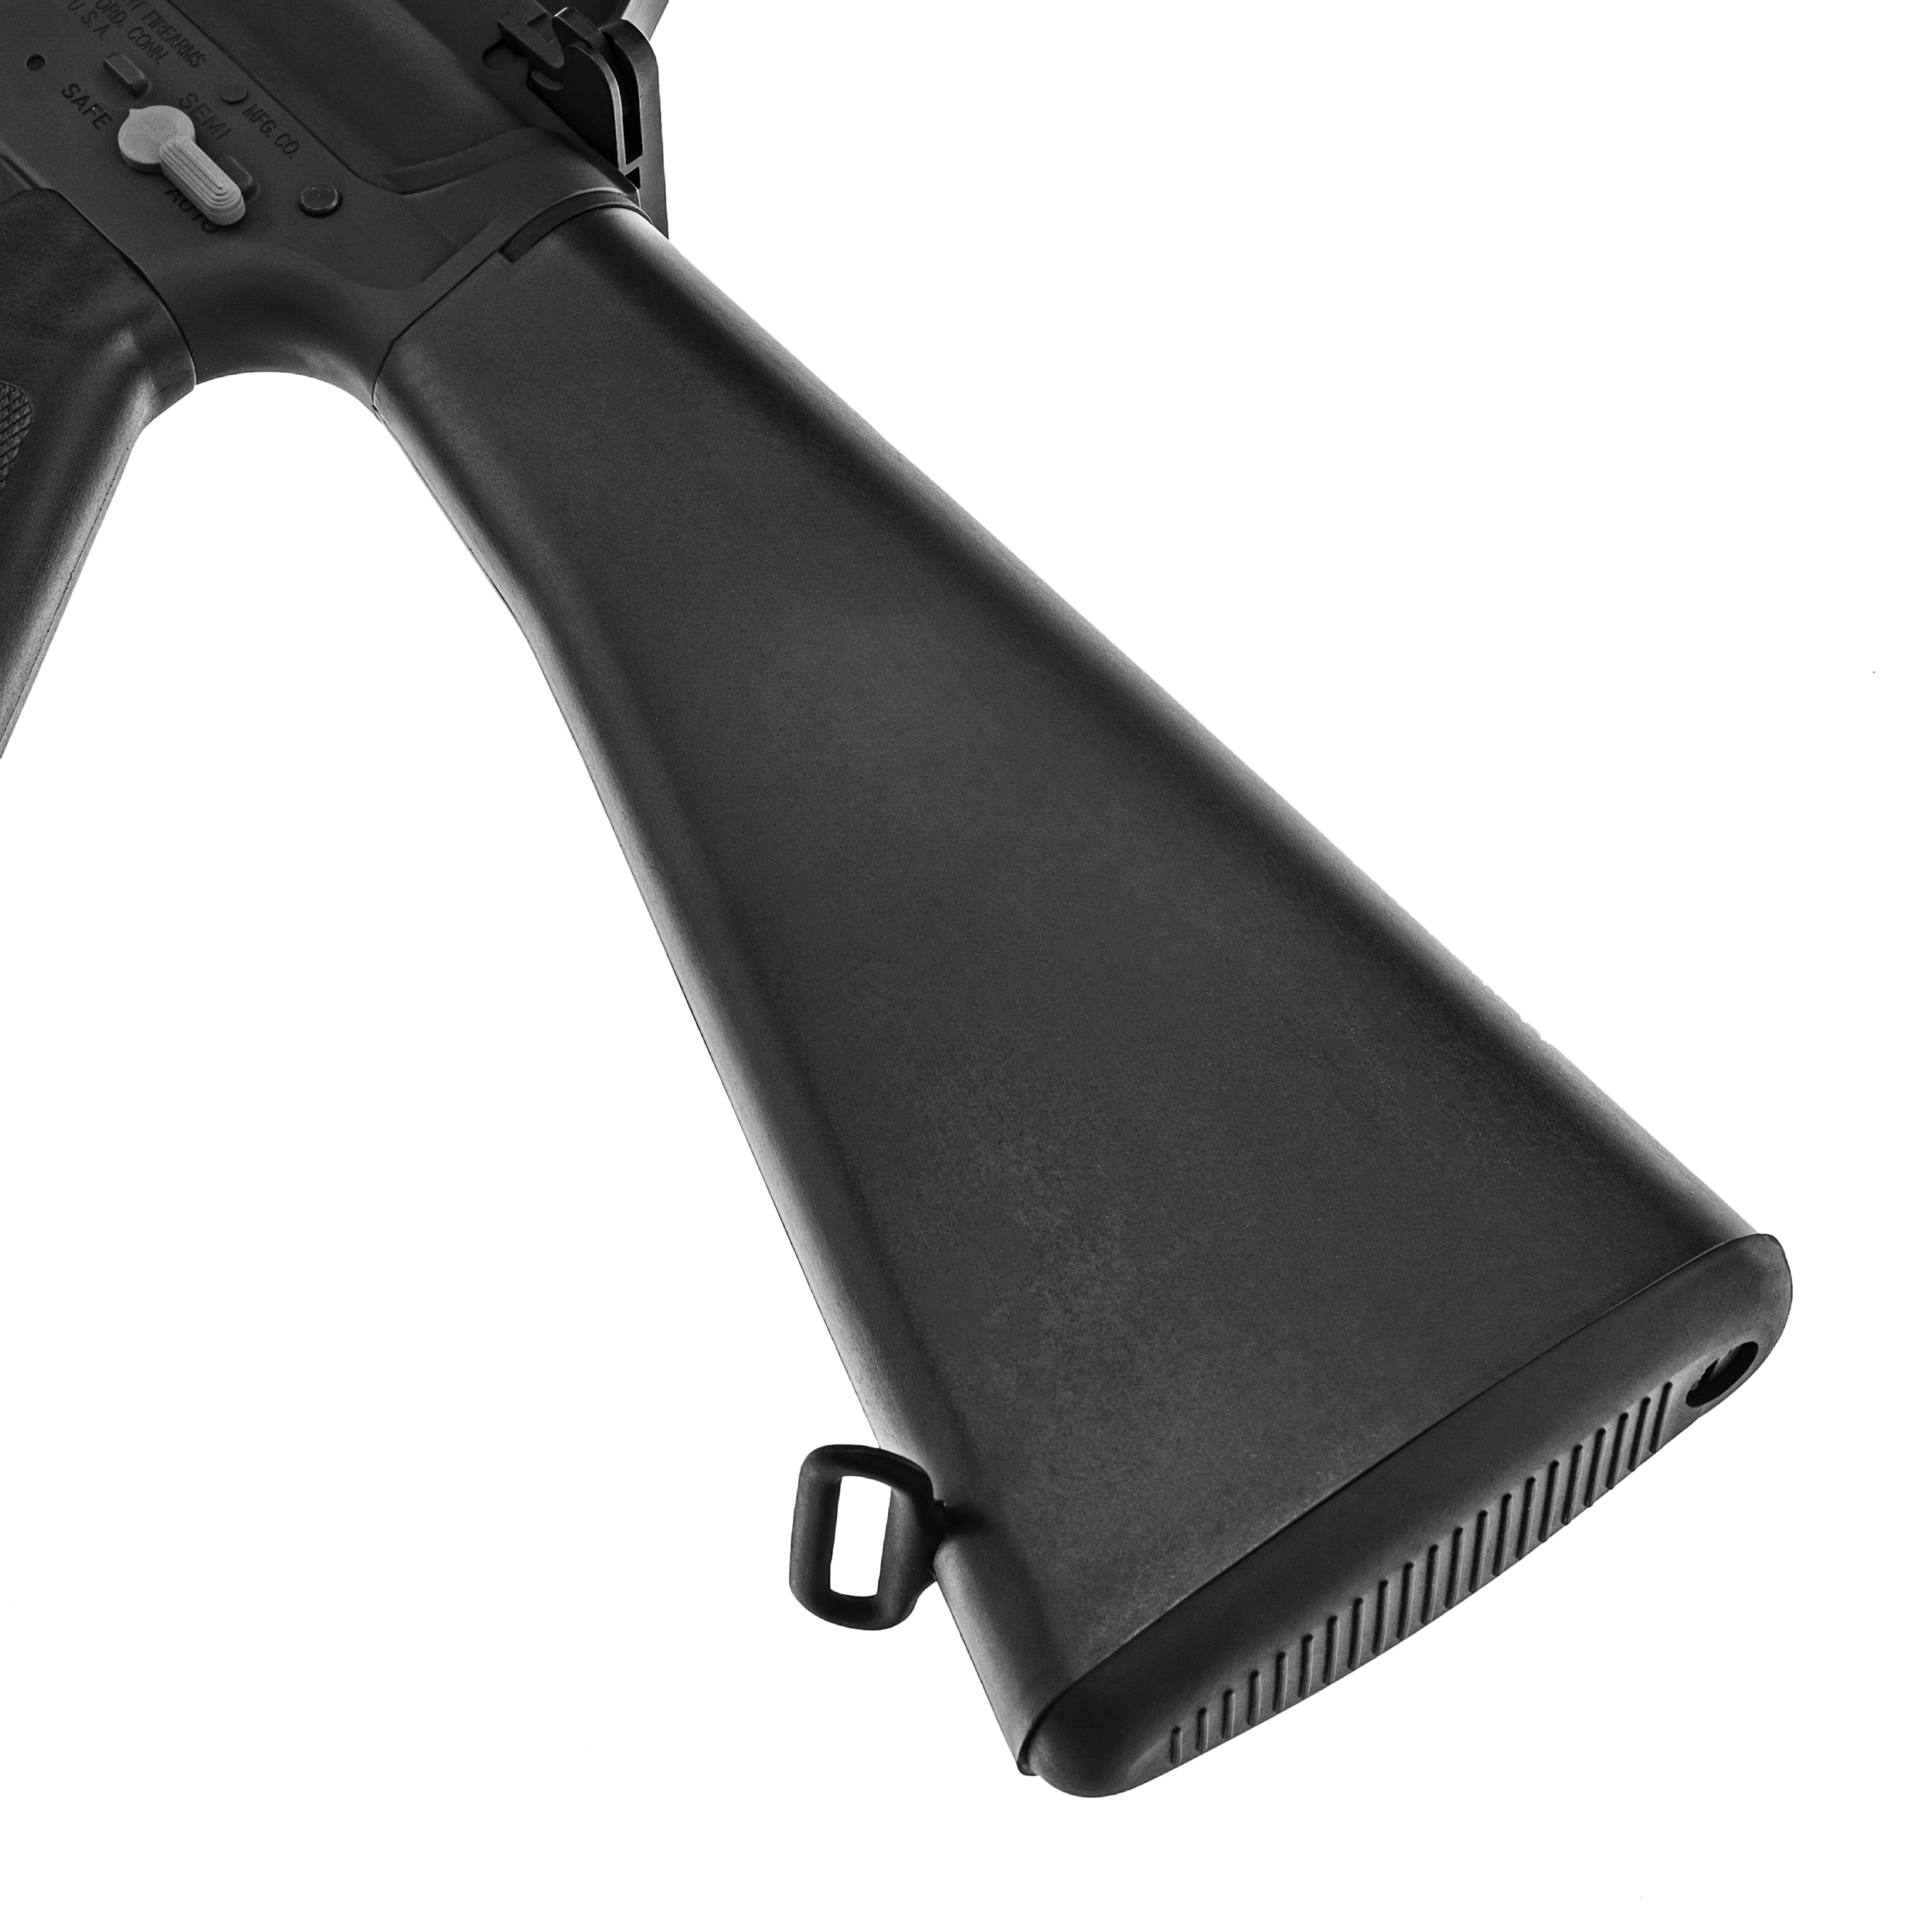 Karabinek szturmowy AEG Cybergun Colt M16 VN - Black